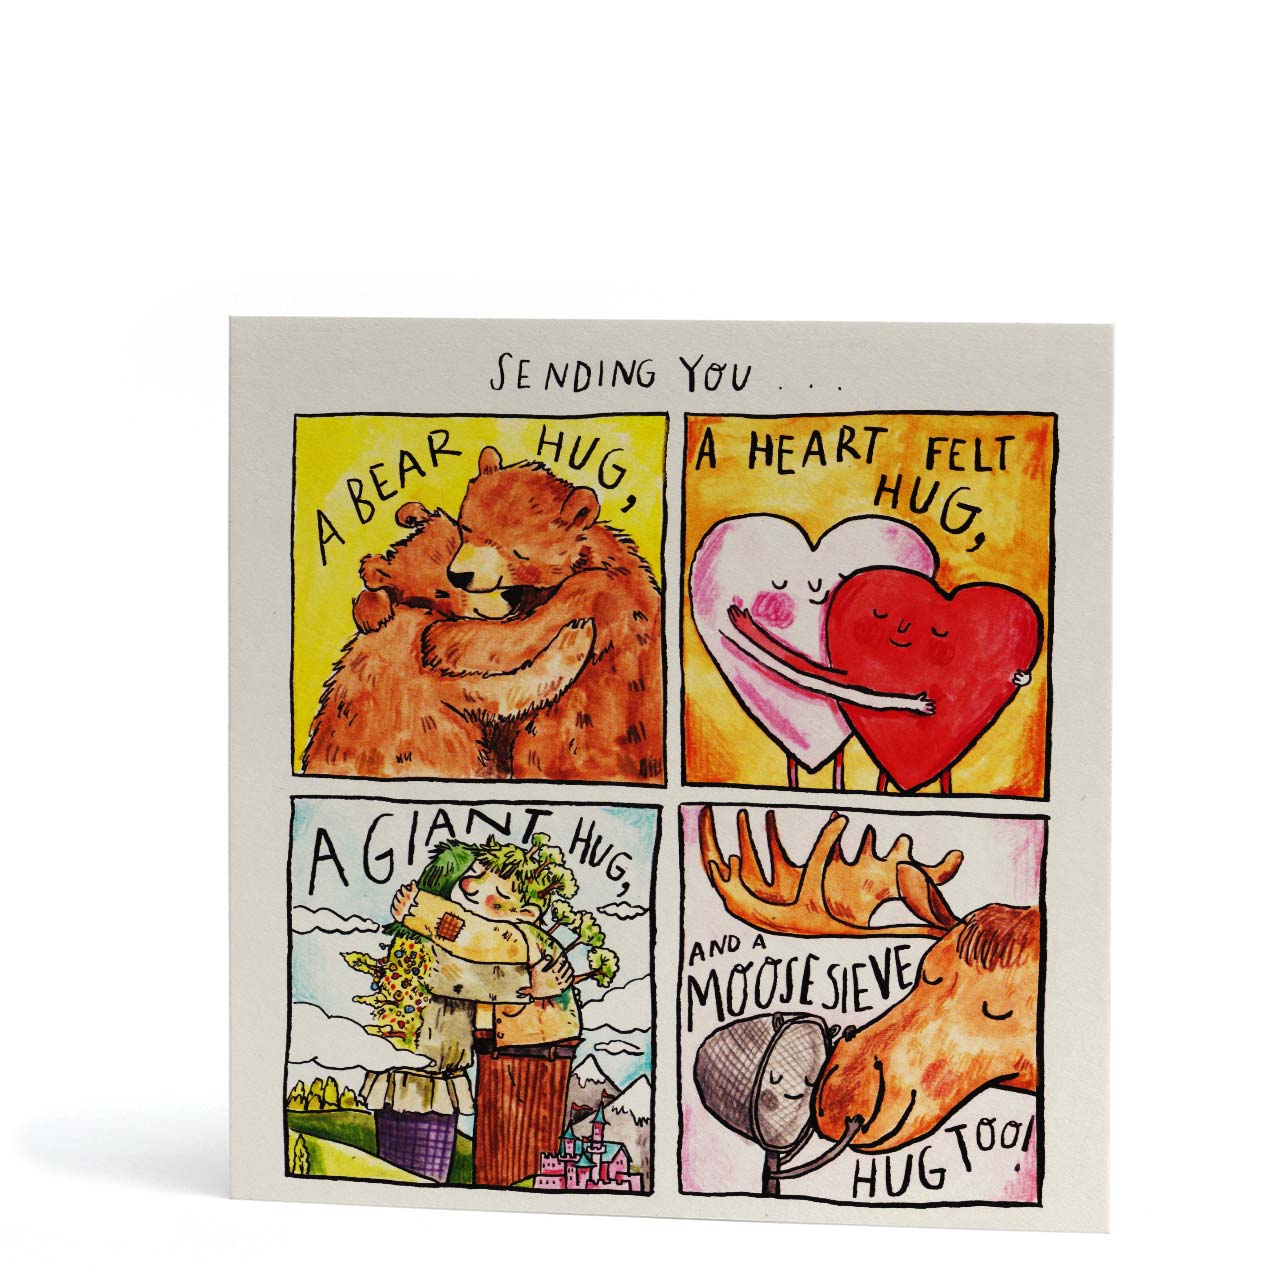 Sending You Moose-sieve Hugs Love Card